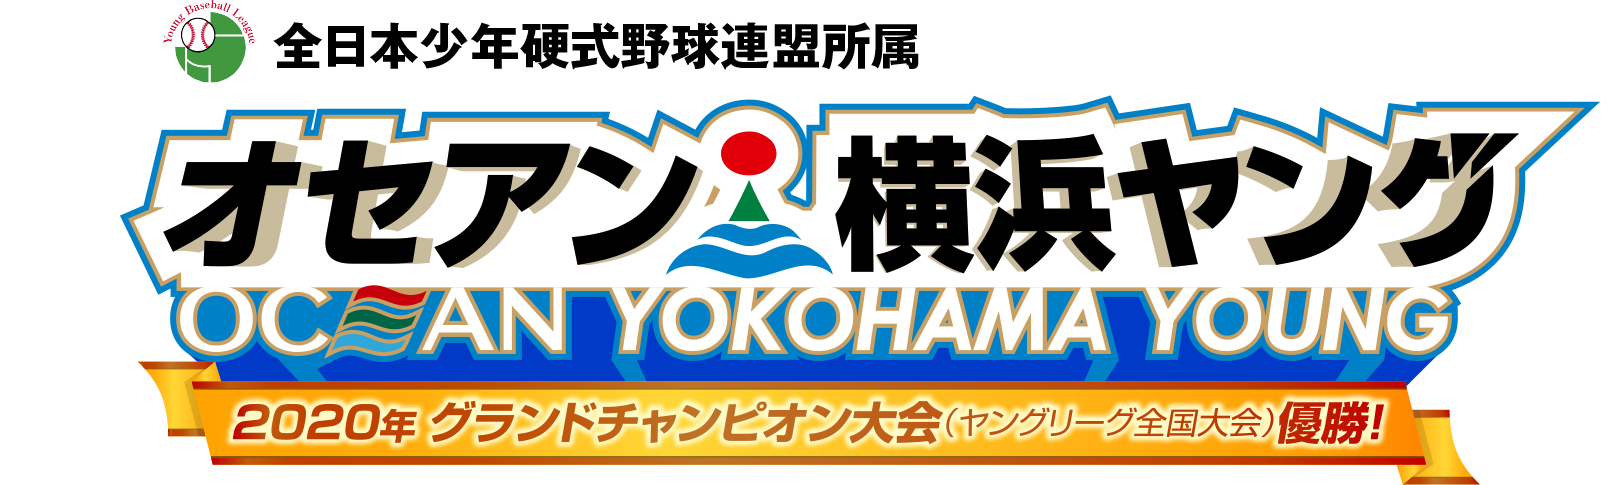 全日本少年硬式野球連盟所属 オセアン横浜ヤング